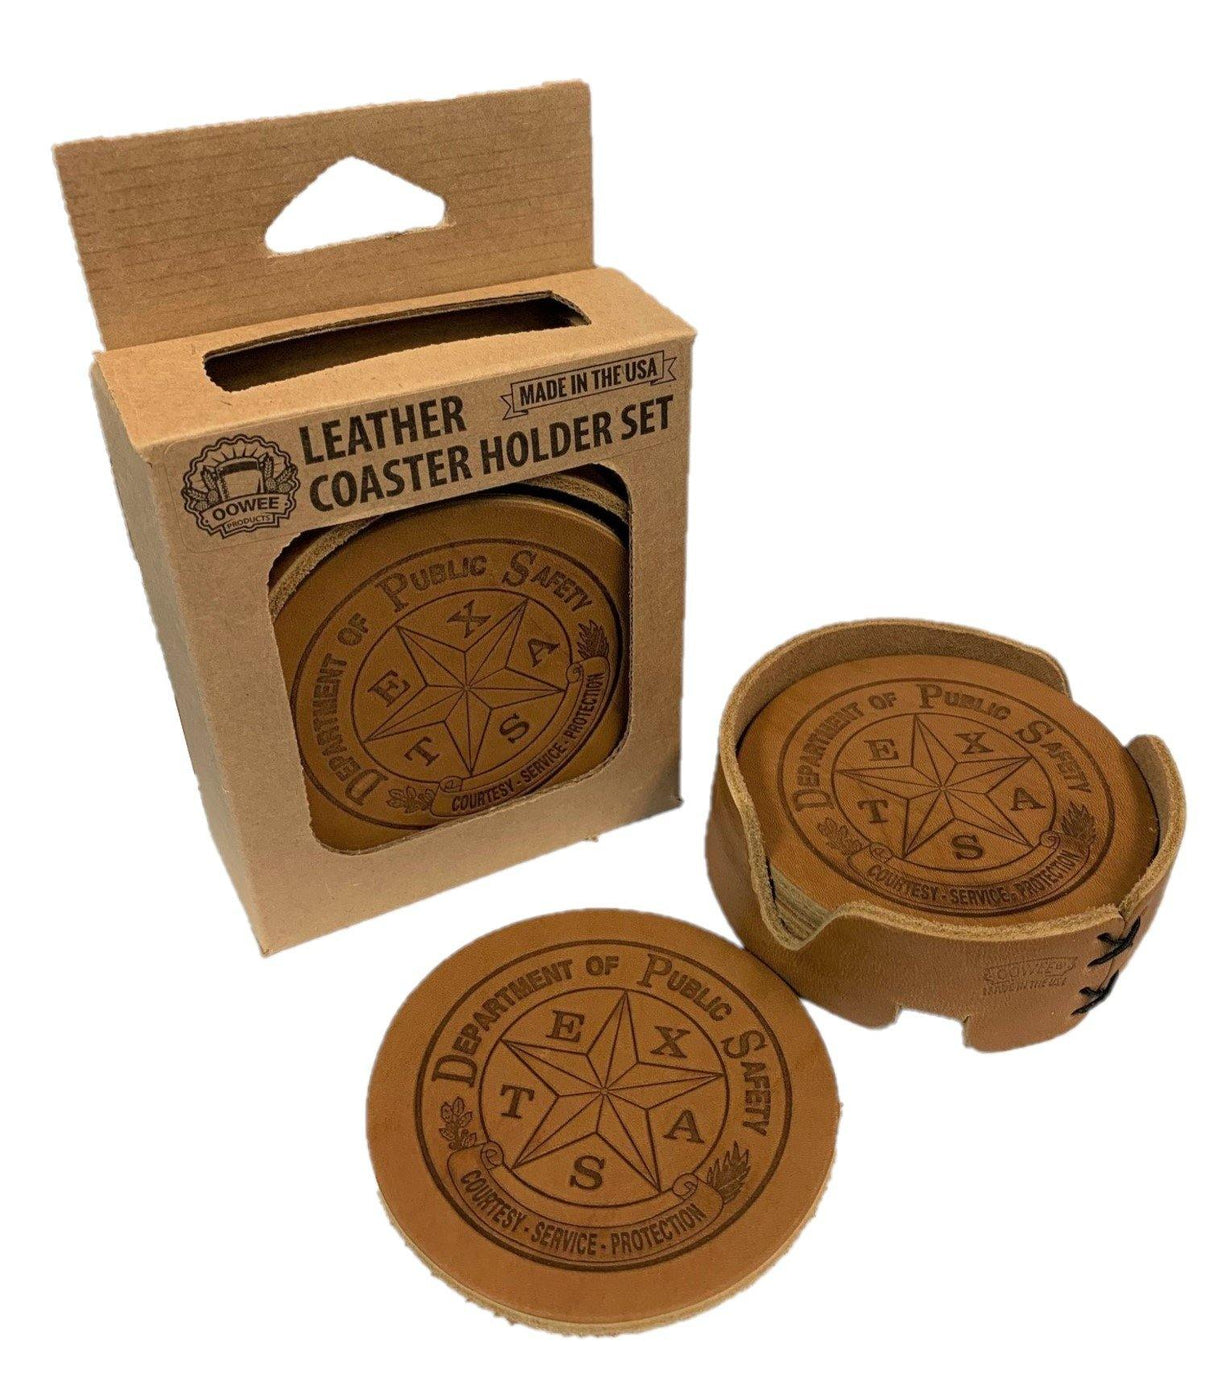 Leather Coaster Set